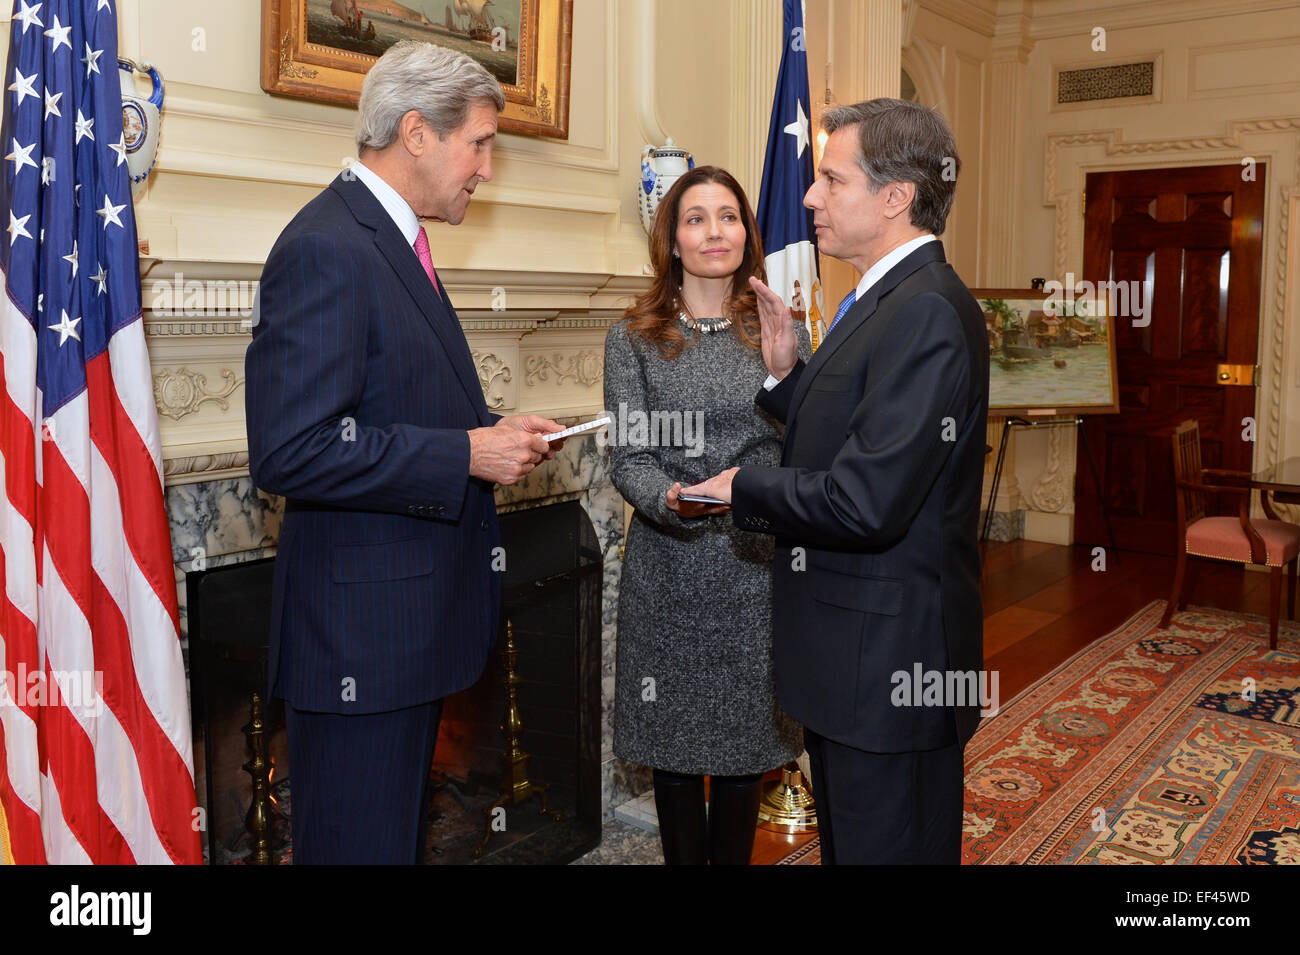 Avec sa femme, secrétaire d'État adjoint aux affaires éducatives et culturelles Evan Ryan, à la recherche, le secrétaire d'État américain John Kerry promet à Antony Blinken comme le nouveau sous-secrétaire d'État, du Département d'État à Washington, D.C., le 9 janvier 2015. Banque D'Images